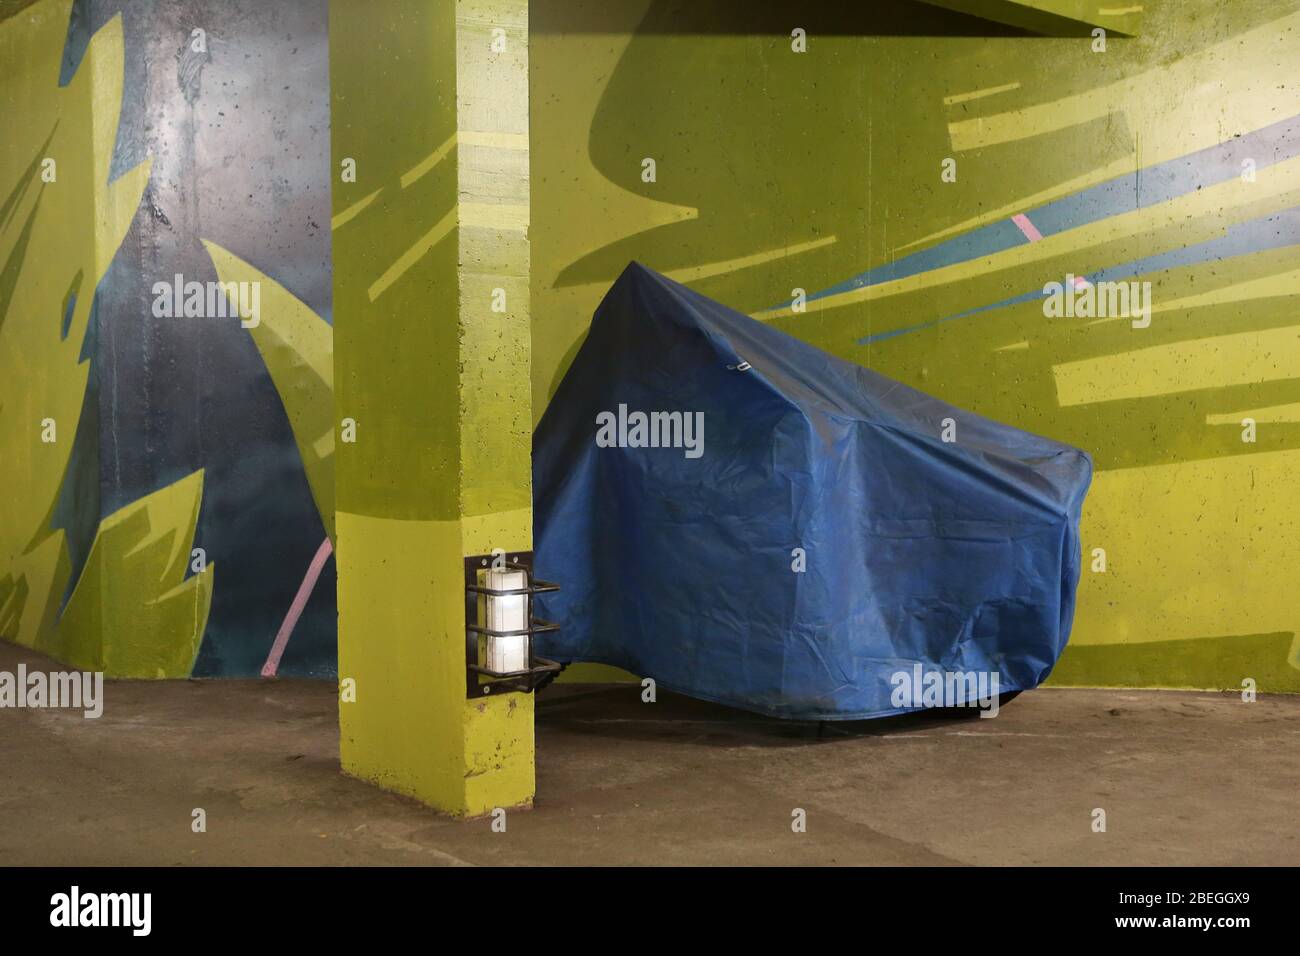 Moto recouverte d'une bâche en plastique bleue. Parking souterrain gratuit. 2KM3. Saint-Gervais-les-Bains. Haute-Savoie. France. Stock Photo